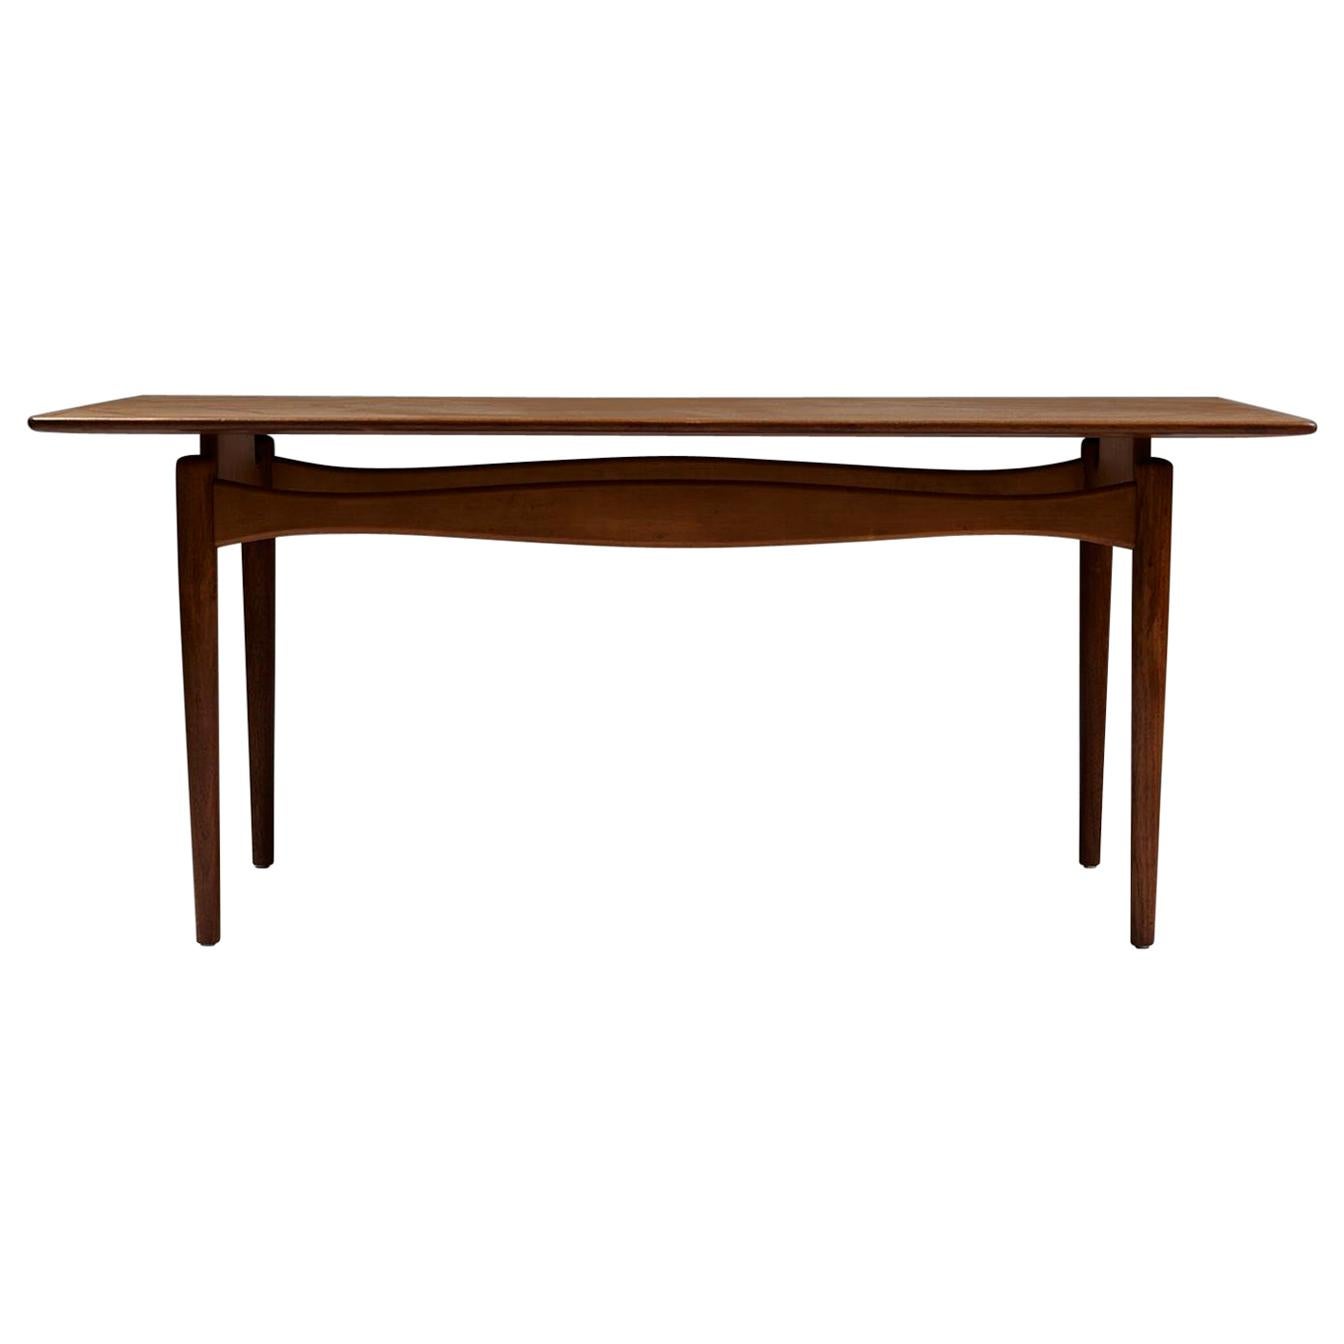 Occasional Table Designed by Finn Juhl for Bovirke, Denmark, 1950s